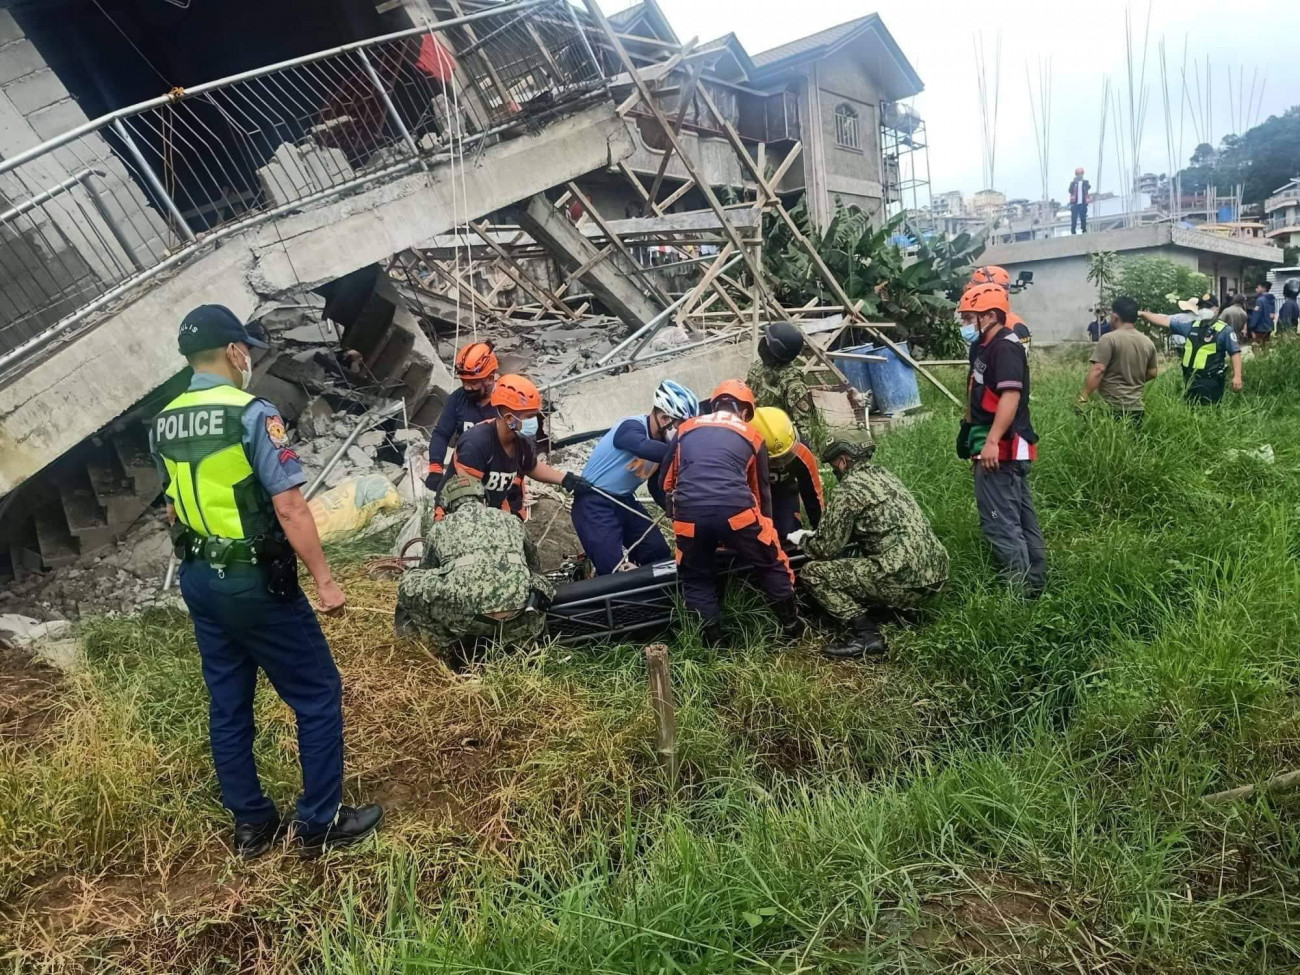 La Trinidad, 2022. július 27.
A Fülöp-szigeteki Tűzvédelmi Hivatal által közreadott képen túlélőt mentenek ki egy összedőlt épület romjai alól mentők és rendőrök a Benguet tartományban fekvő La Trinidadban 2022. július 27-én, miután 7,3-es erősségű földrengés volt a Fülöp-szigetek északi részén. Egyelőre egy sérültről tudni.
MTI/EPA/Fülöp-szigeteki Tűzvédelmi Hivatal